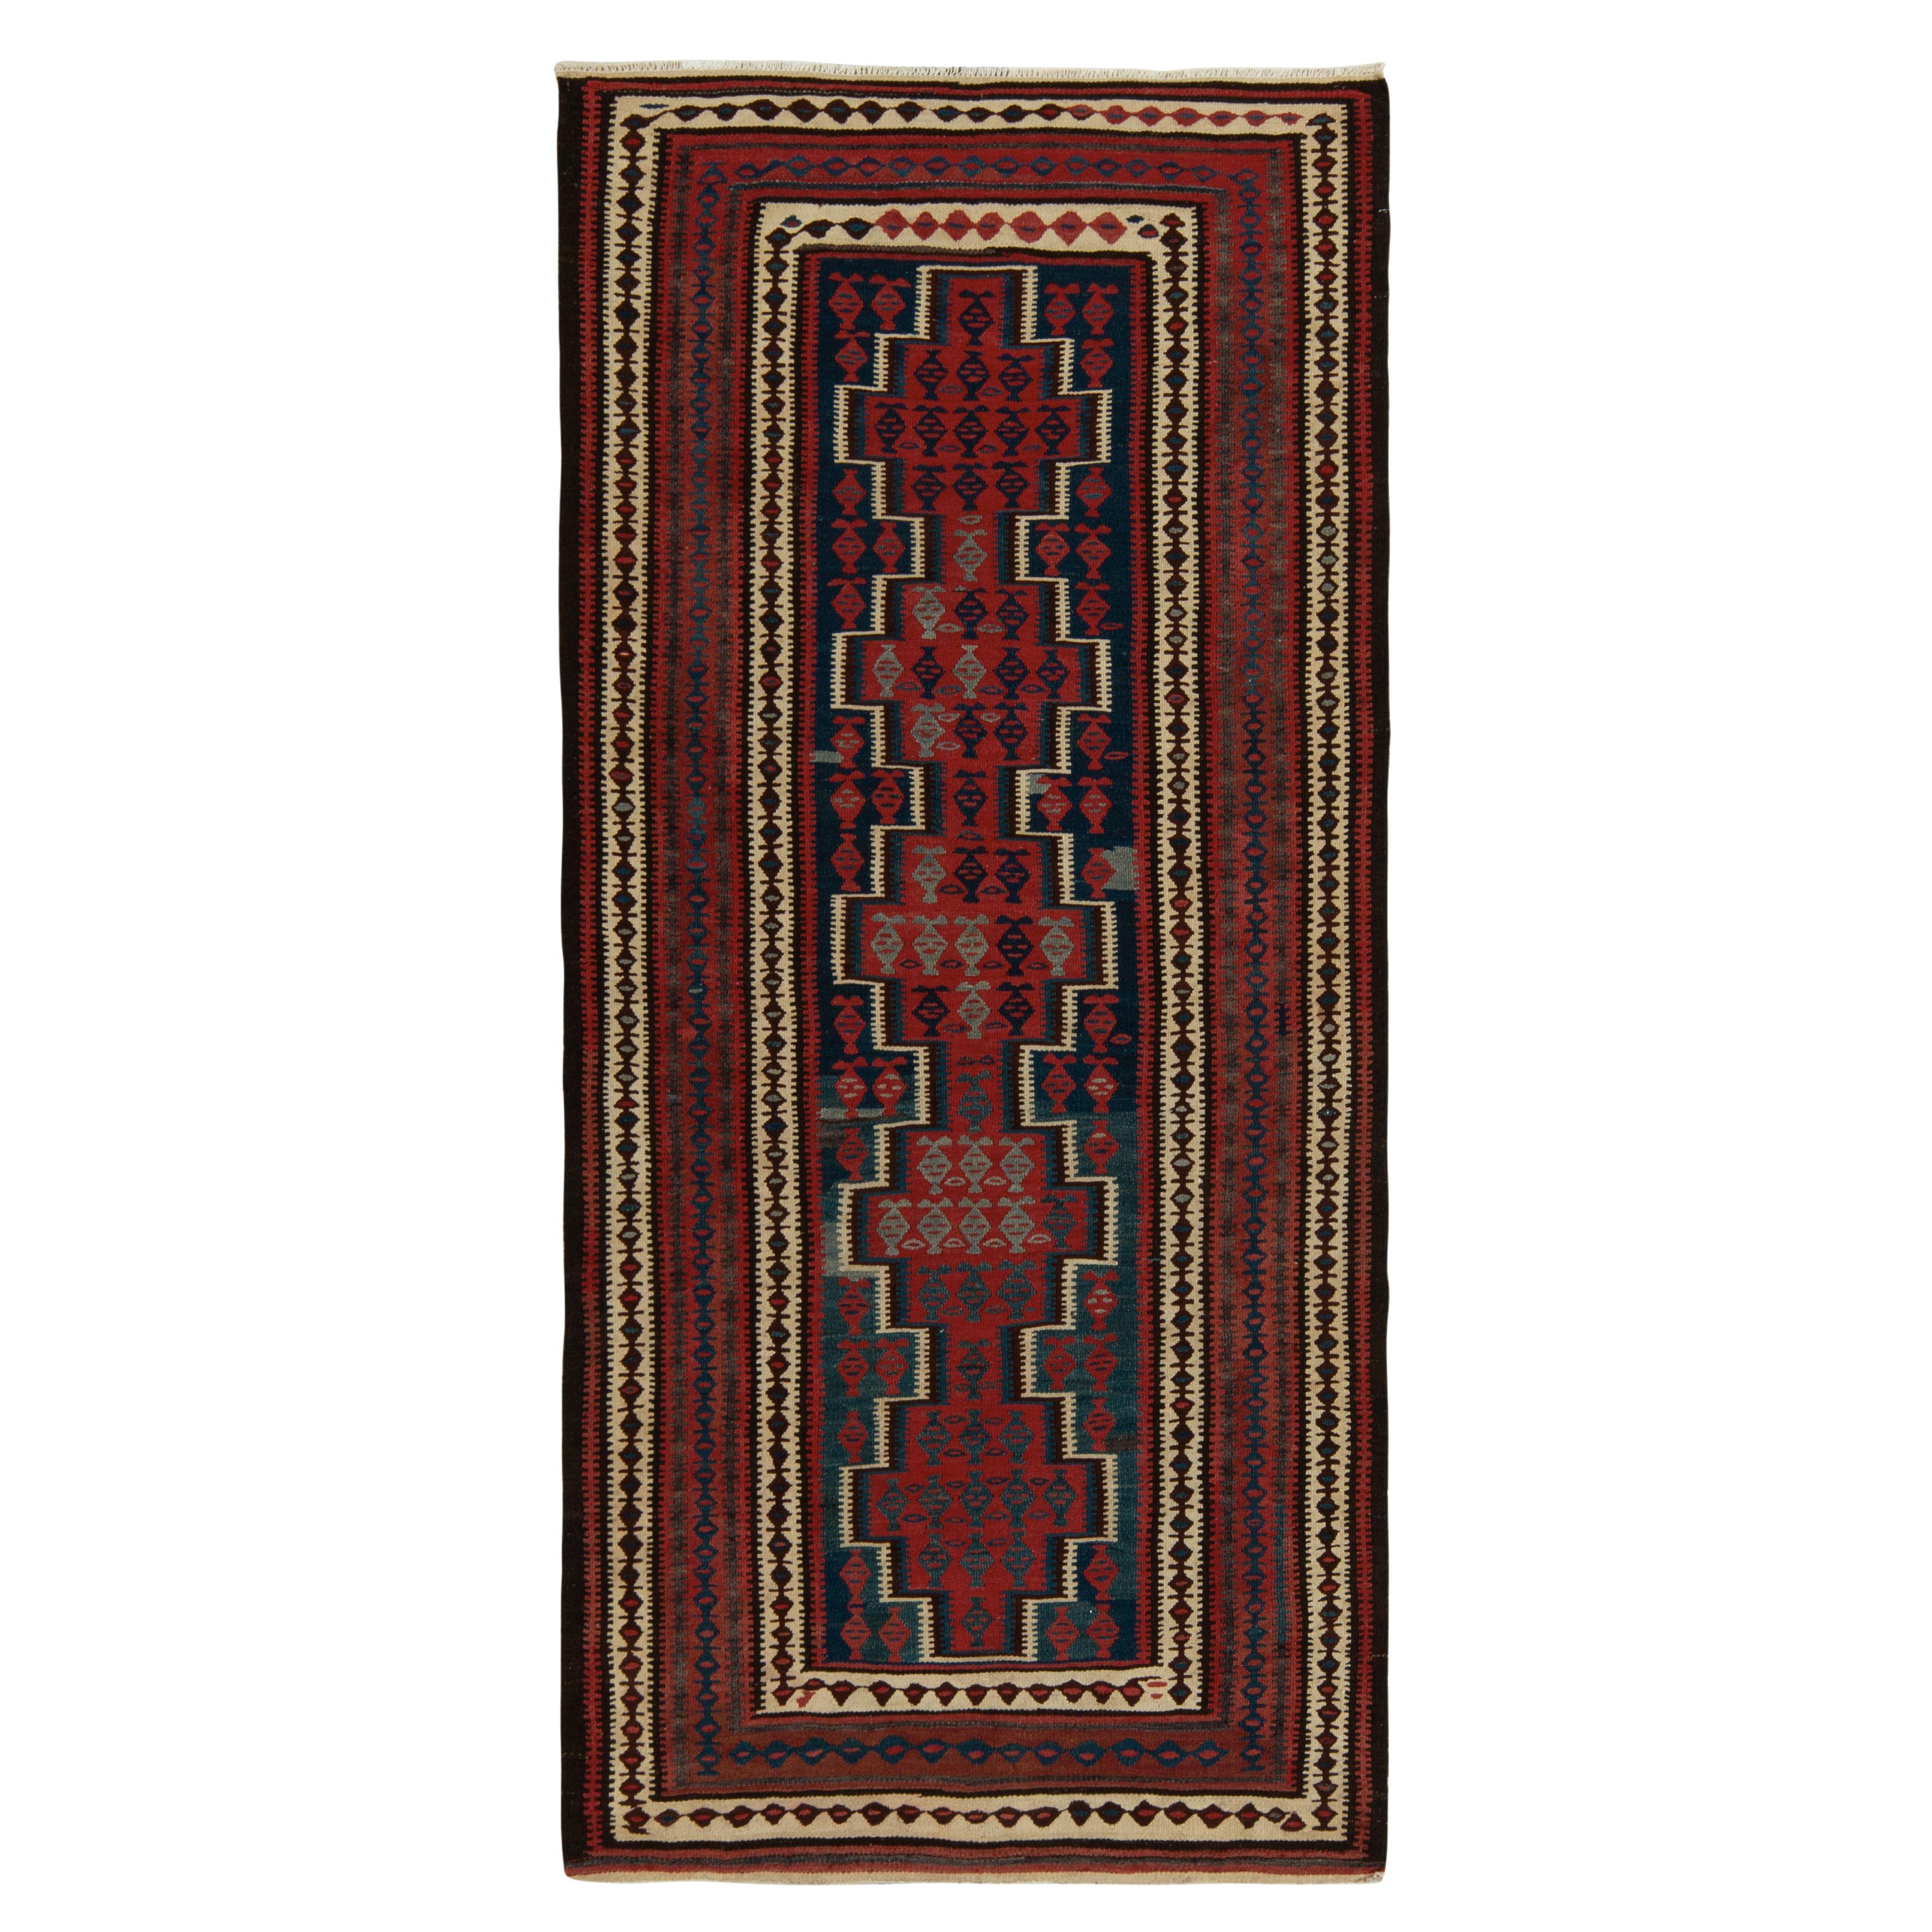 1950s Vintage Kilim rug in Red, Blue and Brown Geometric Patterns by Rug & Kilim